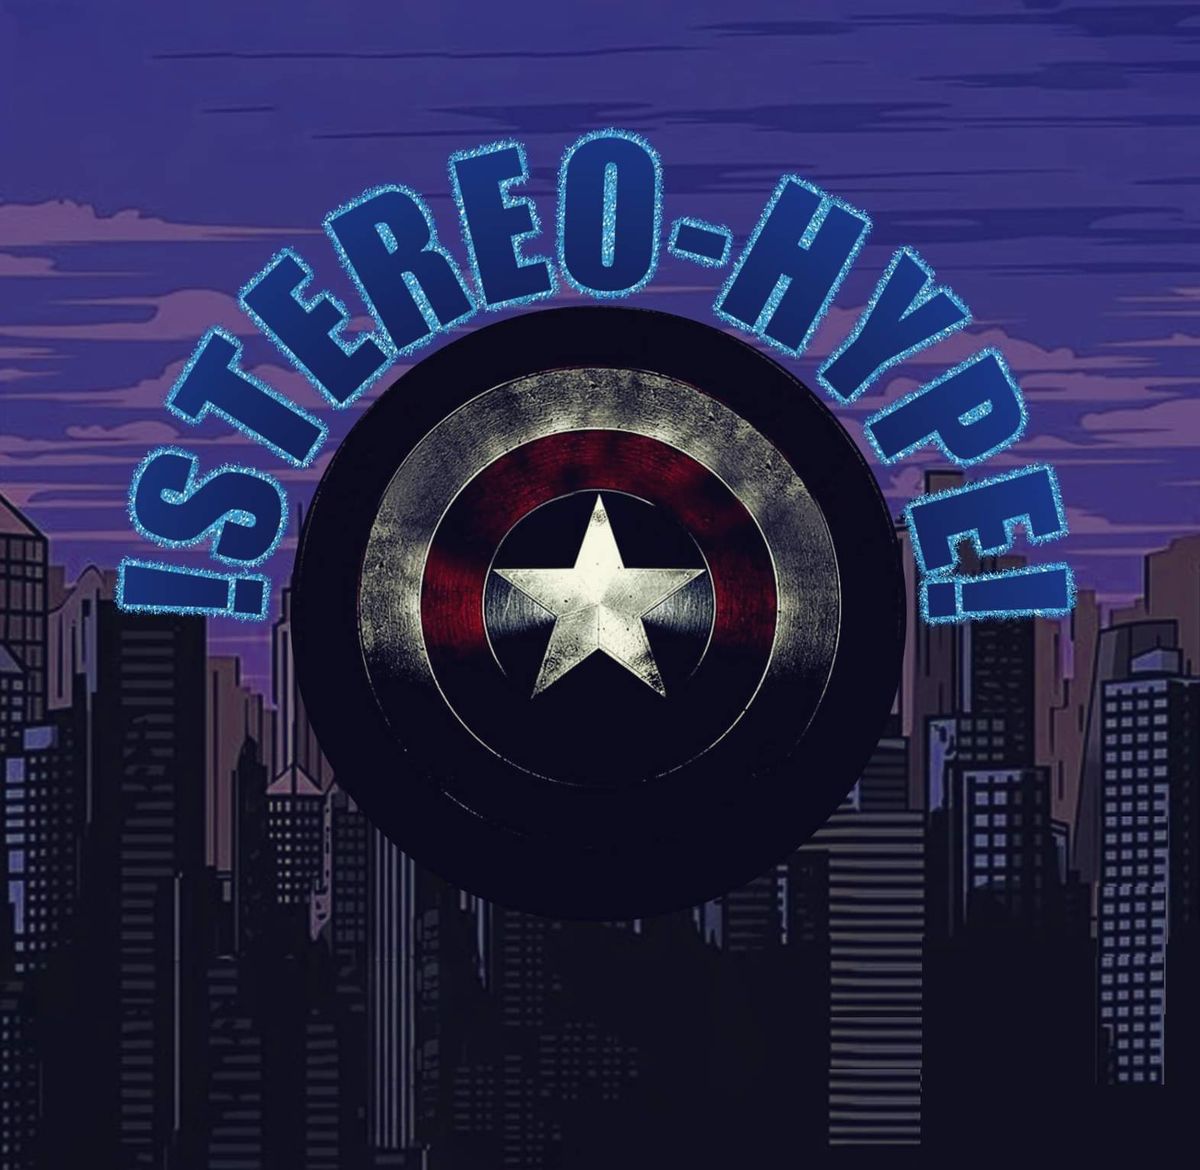 !Stereo-Hype! at Seasons